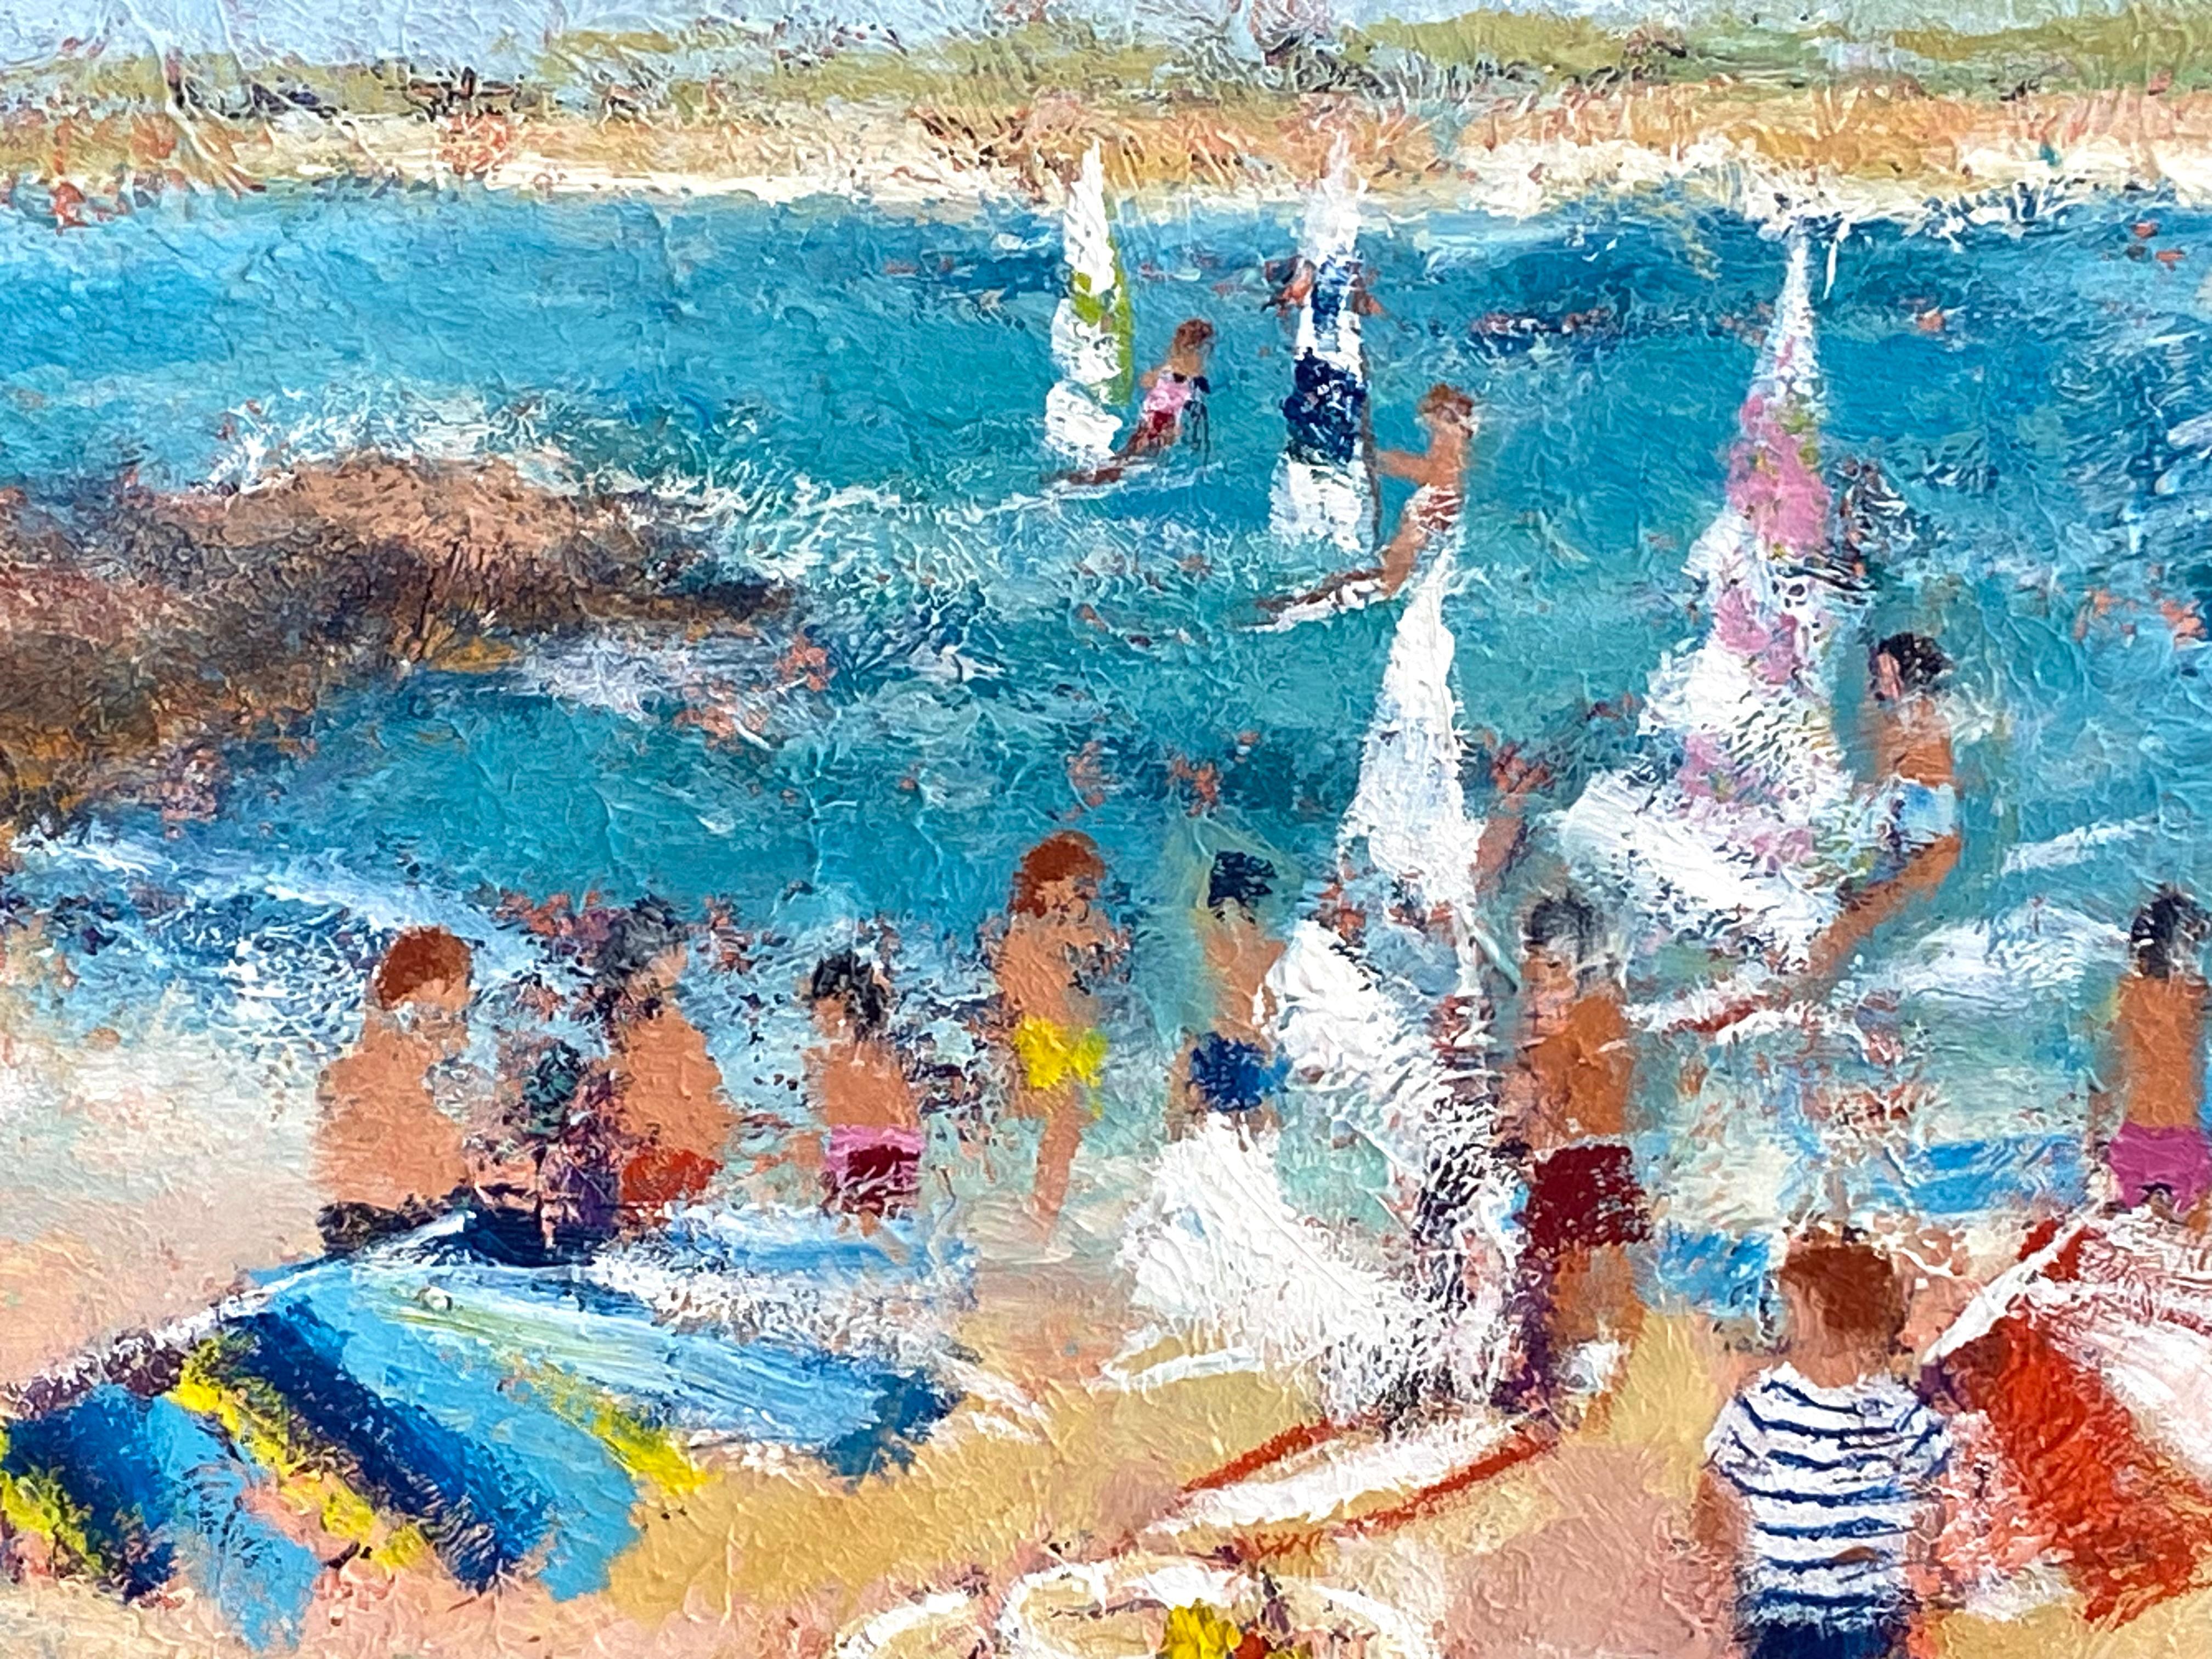 Une journée à la plage - Contemporain Painting par Urbain Huchet